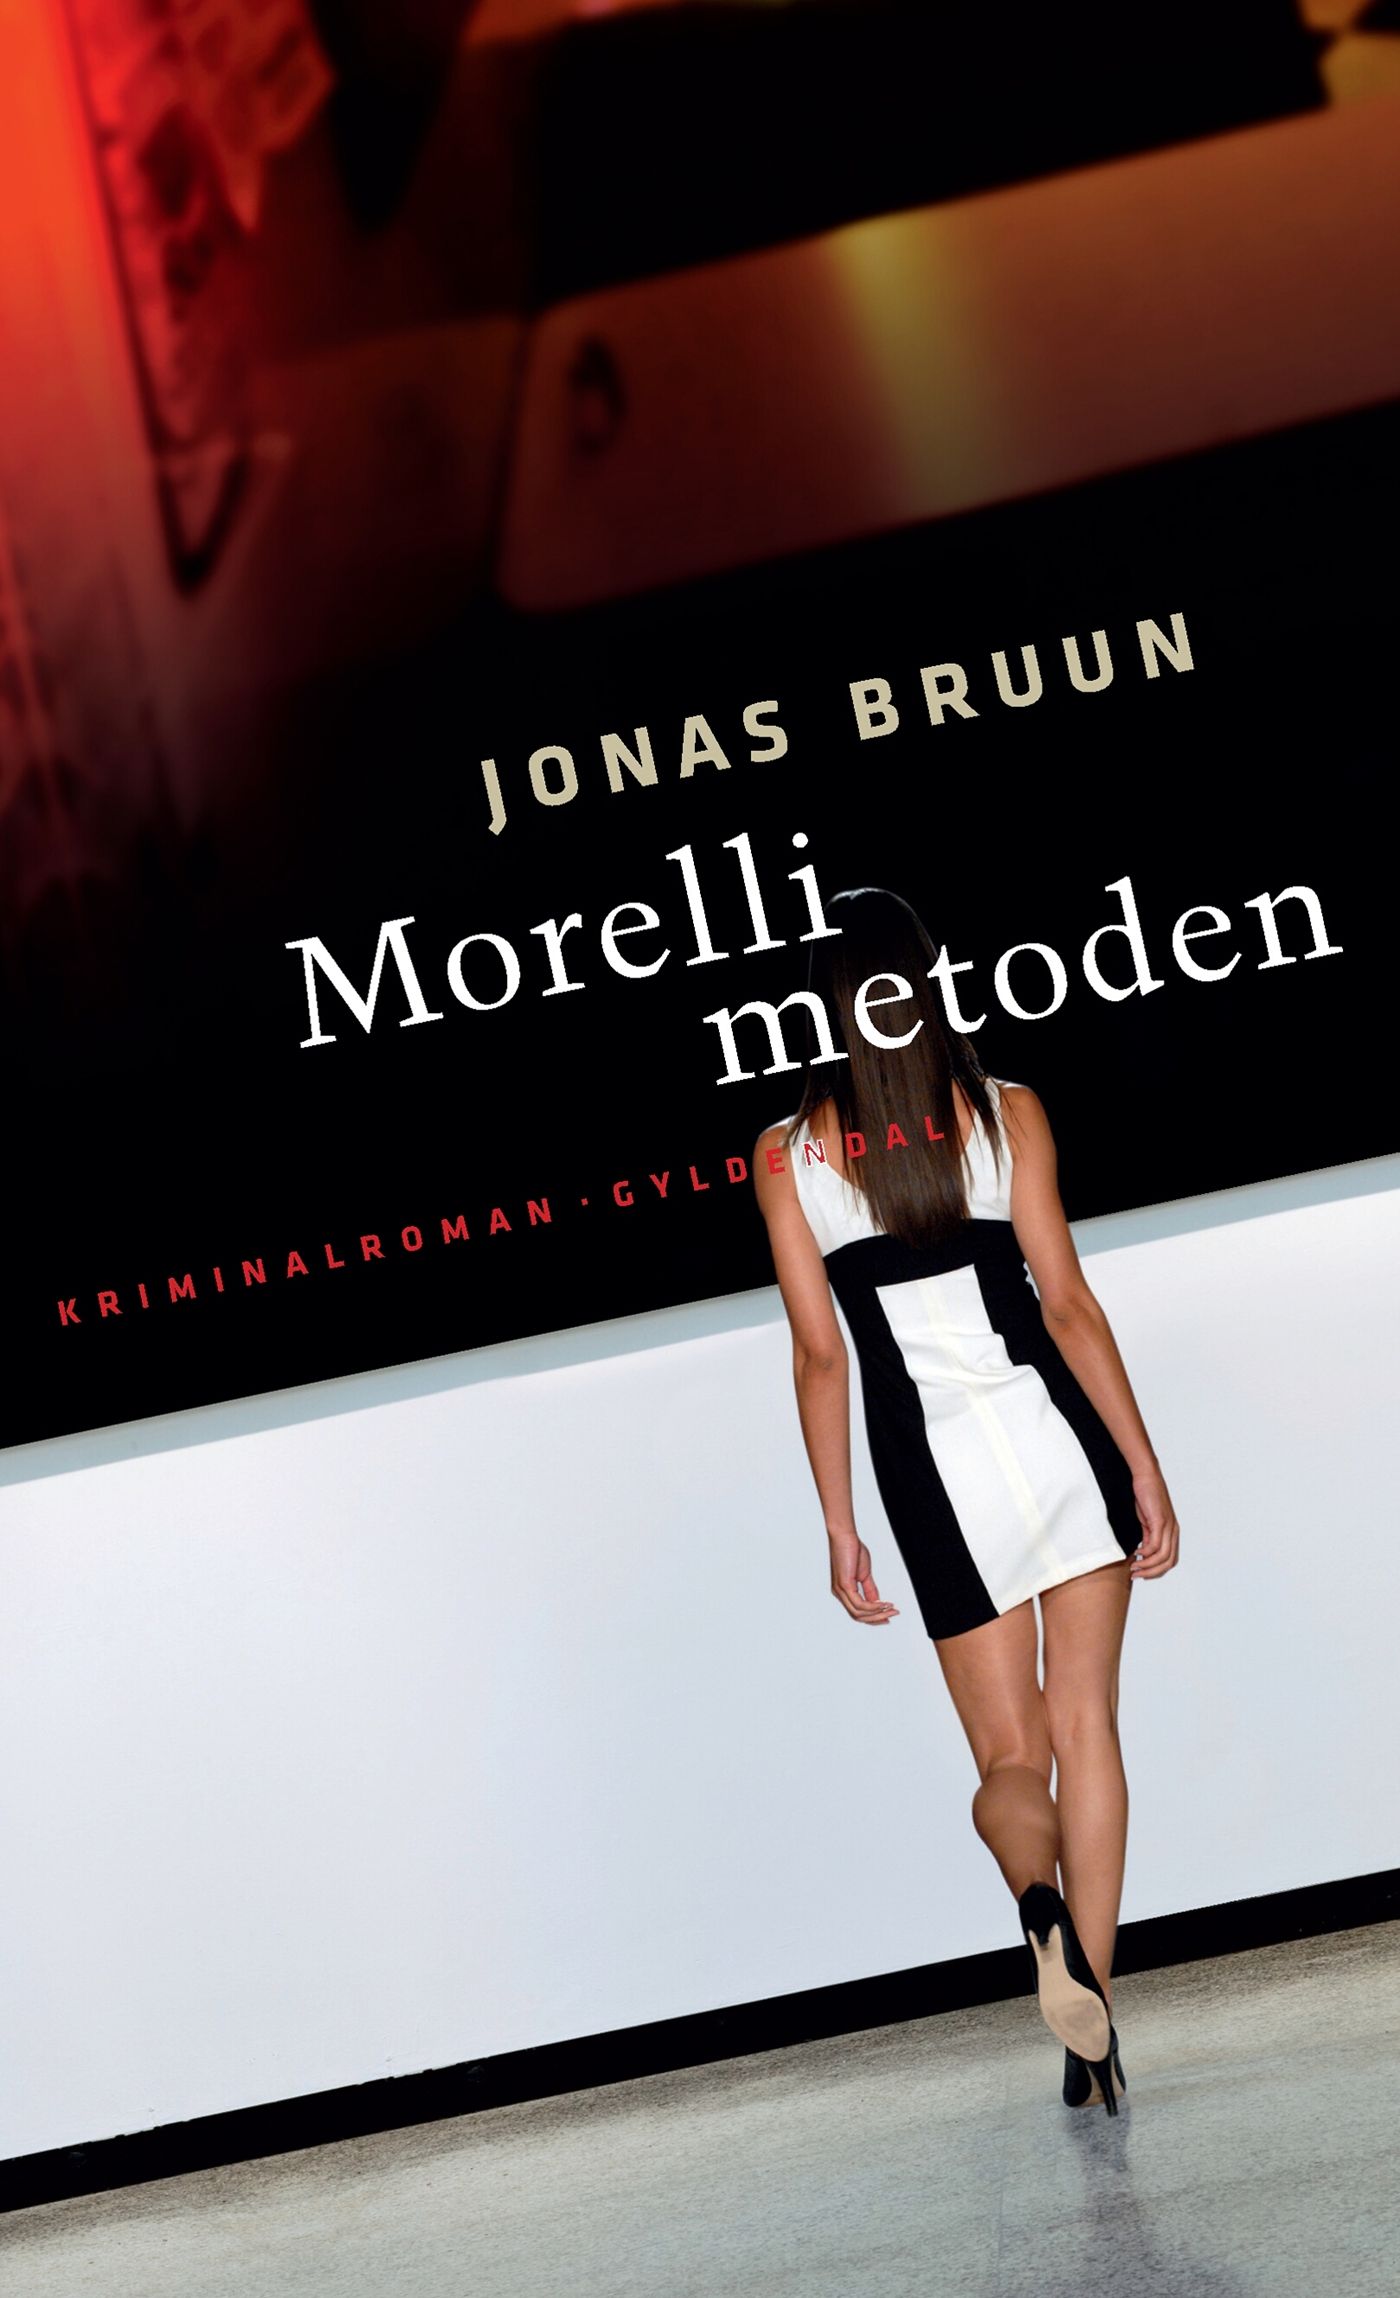 Morelli-metoden, e-bog af Jonas Bruun